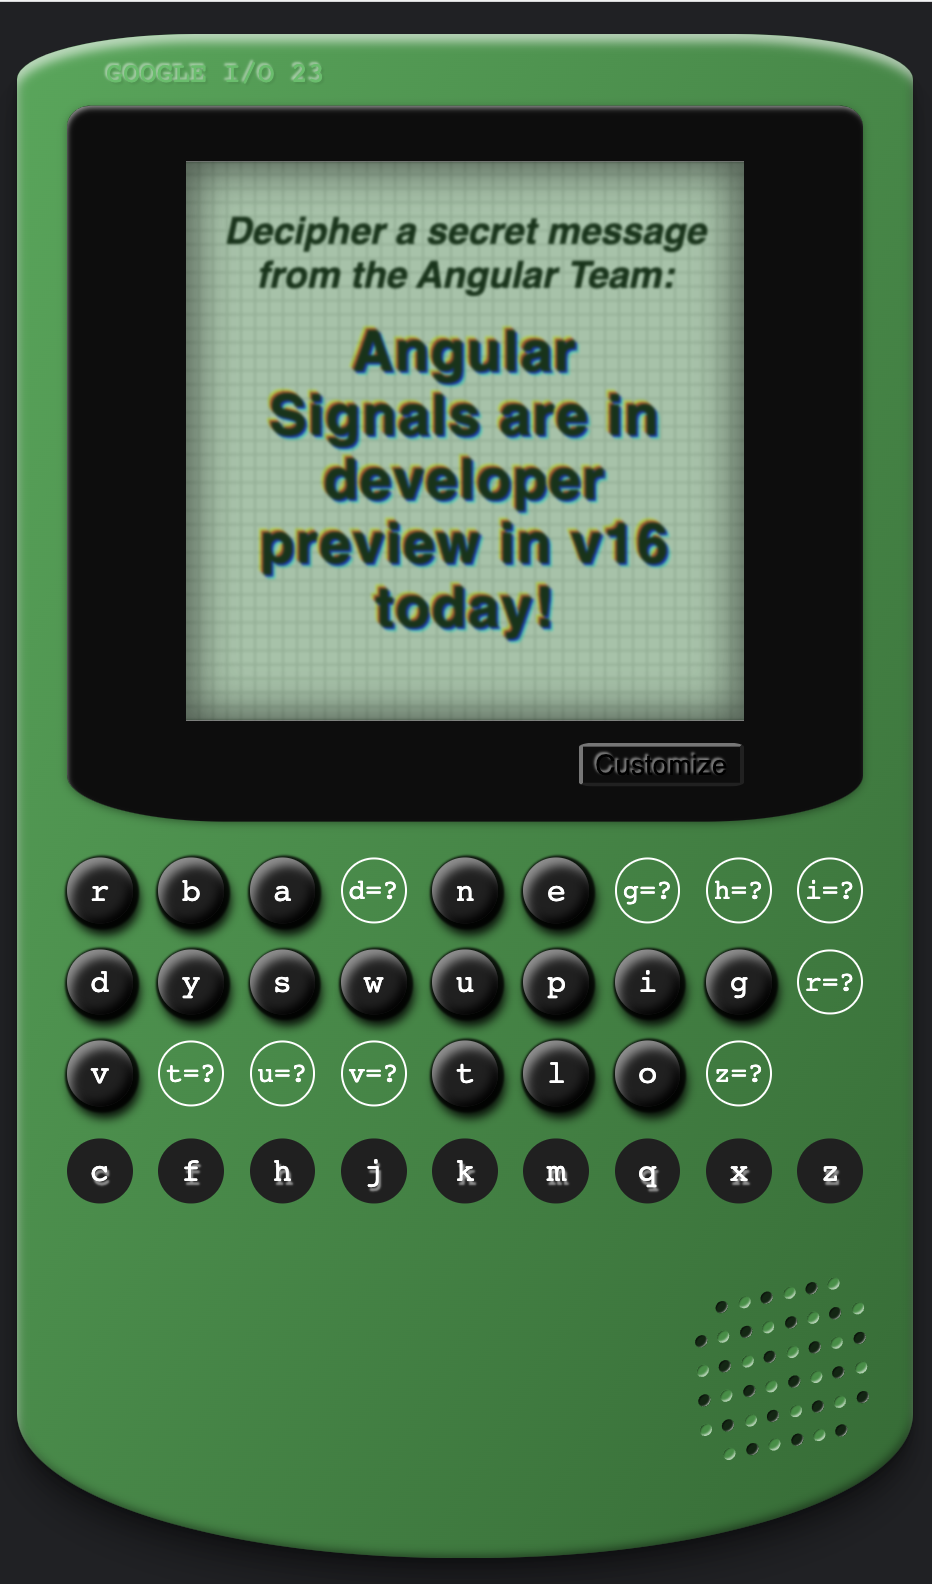 Le jeu Angular Cypher est résolu en affichant le message "Angular Signals are in developer Preview in v16 today!" (Les signaux Angular sont en version Preview développeur aujourd'hui dans la version 16).